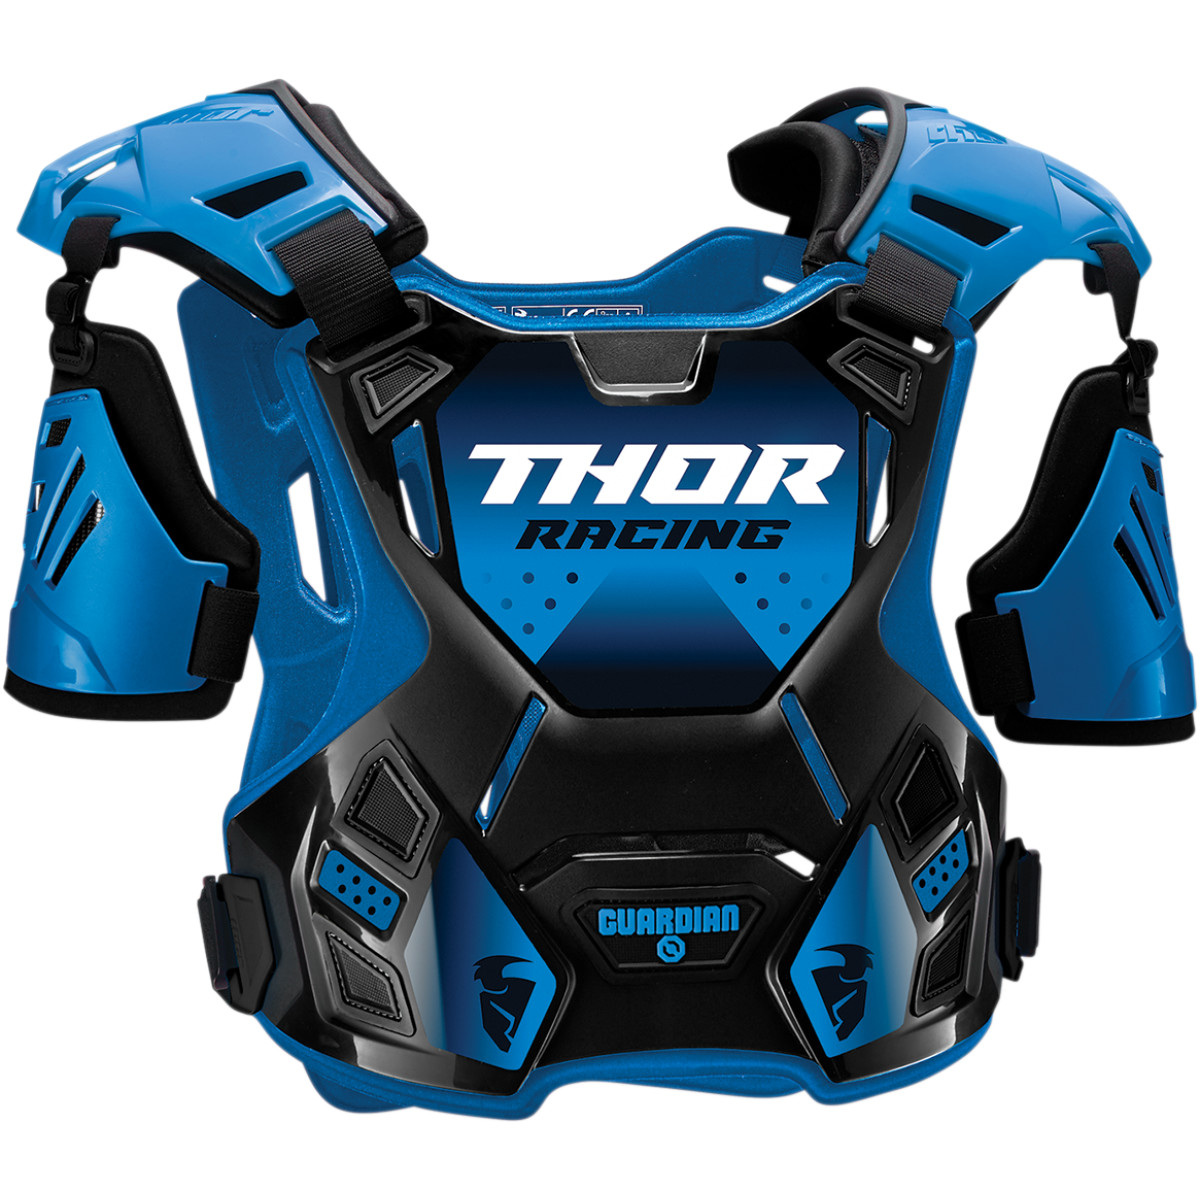 Protectie Corp Thor Guardian Culoare Albastru/negru Marime Xl/2xl